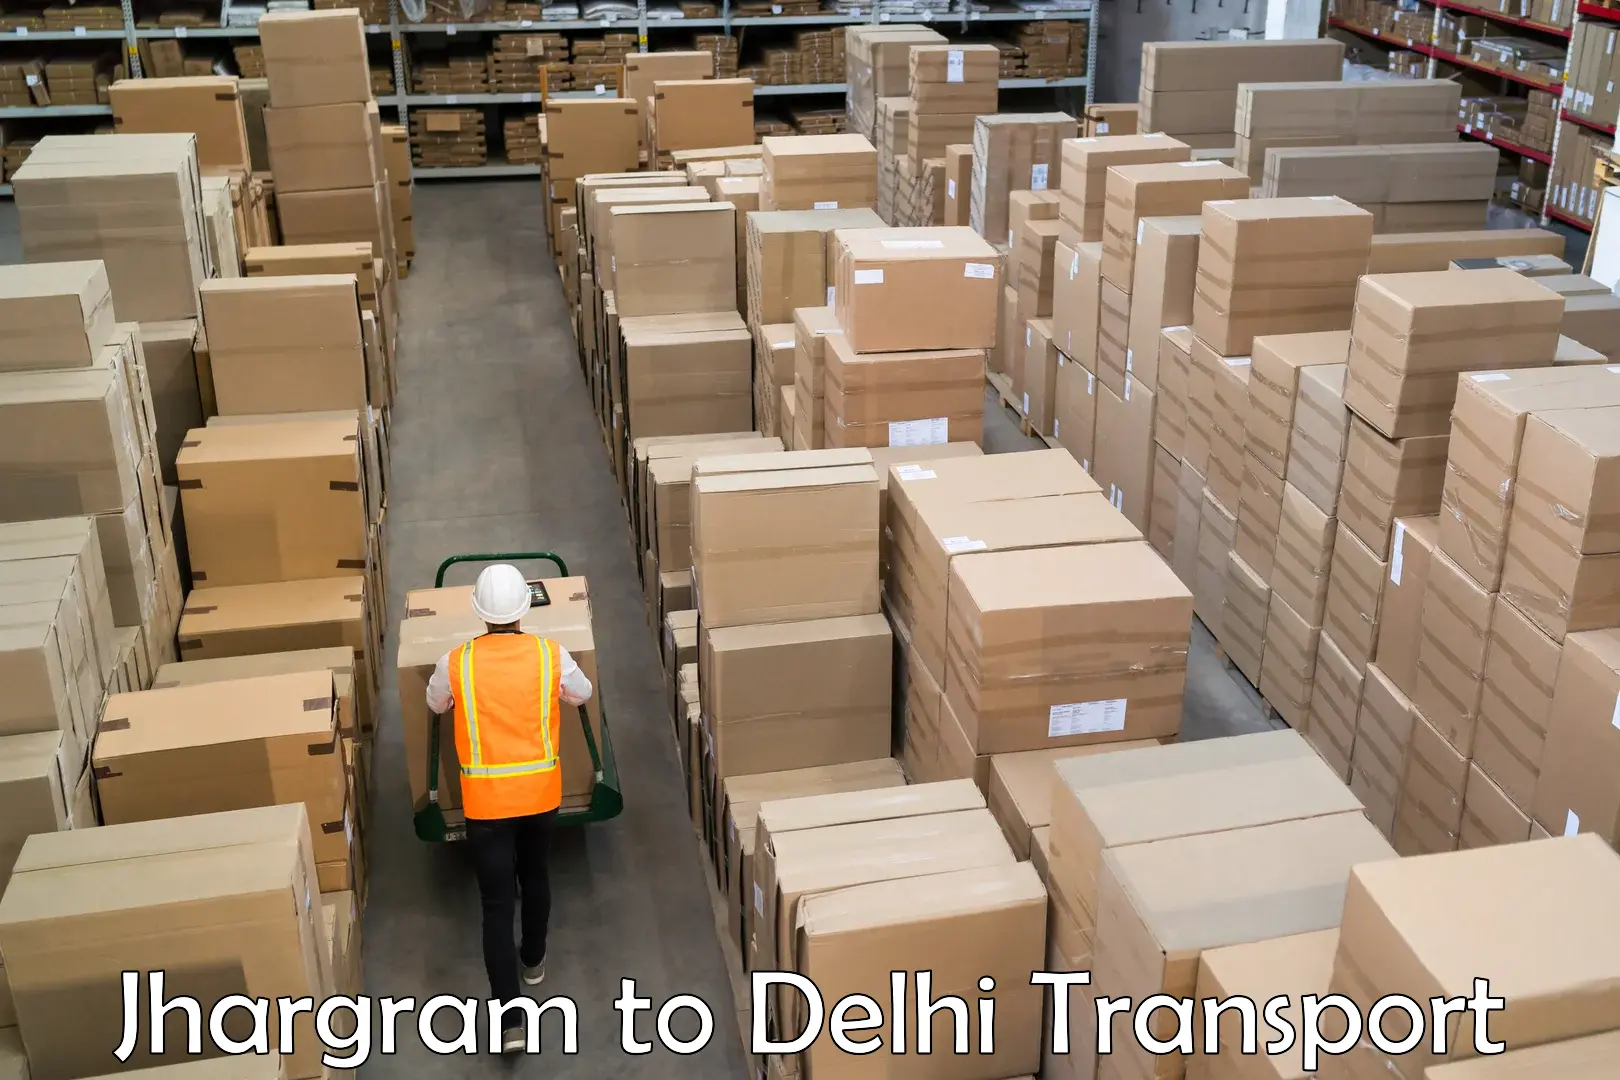 Daily parcel service transport Jhargram to Kalkaji